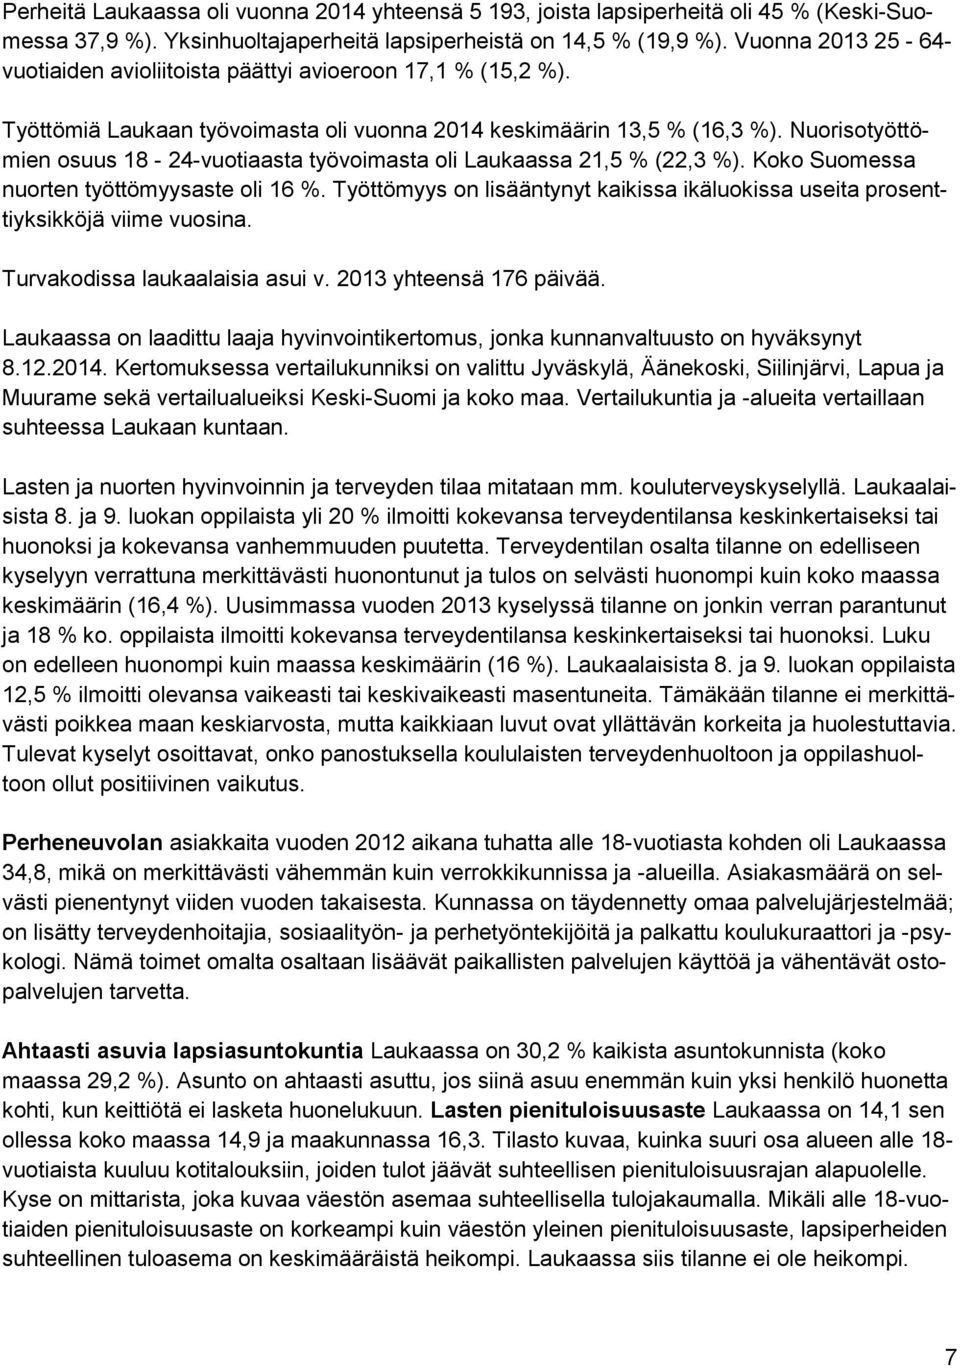 Nuorisotyöttömien osuus 18-24-vuotiaasta työvoimasta oli Laukaassa 21,5 % (22,3 %). Koko Suomessa nuorten työttömyysaste oli 16 %.